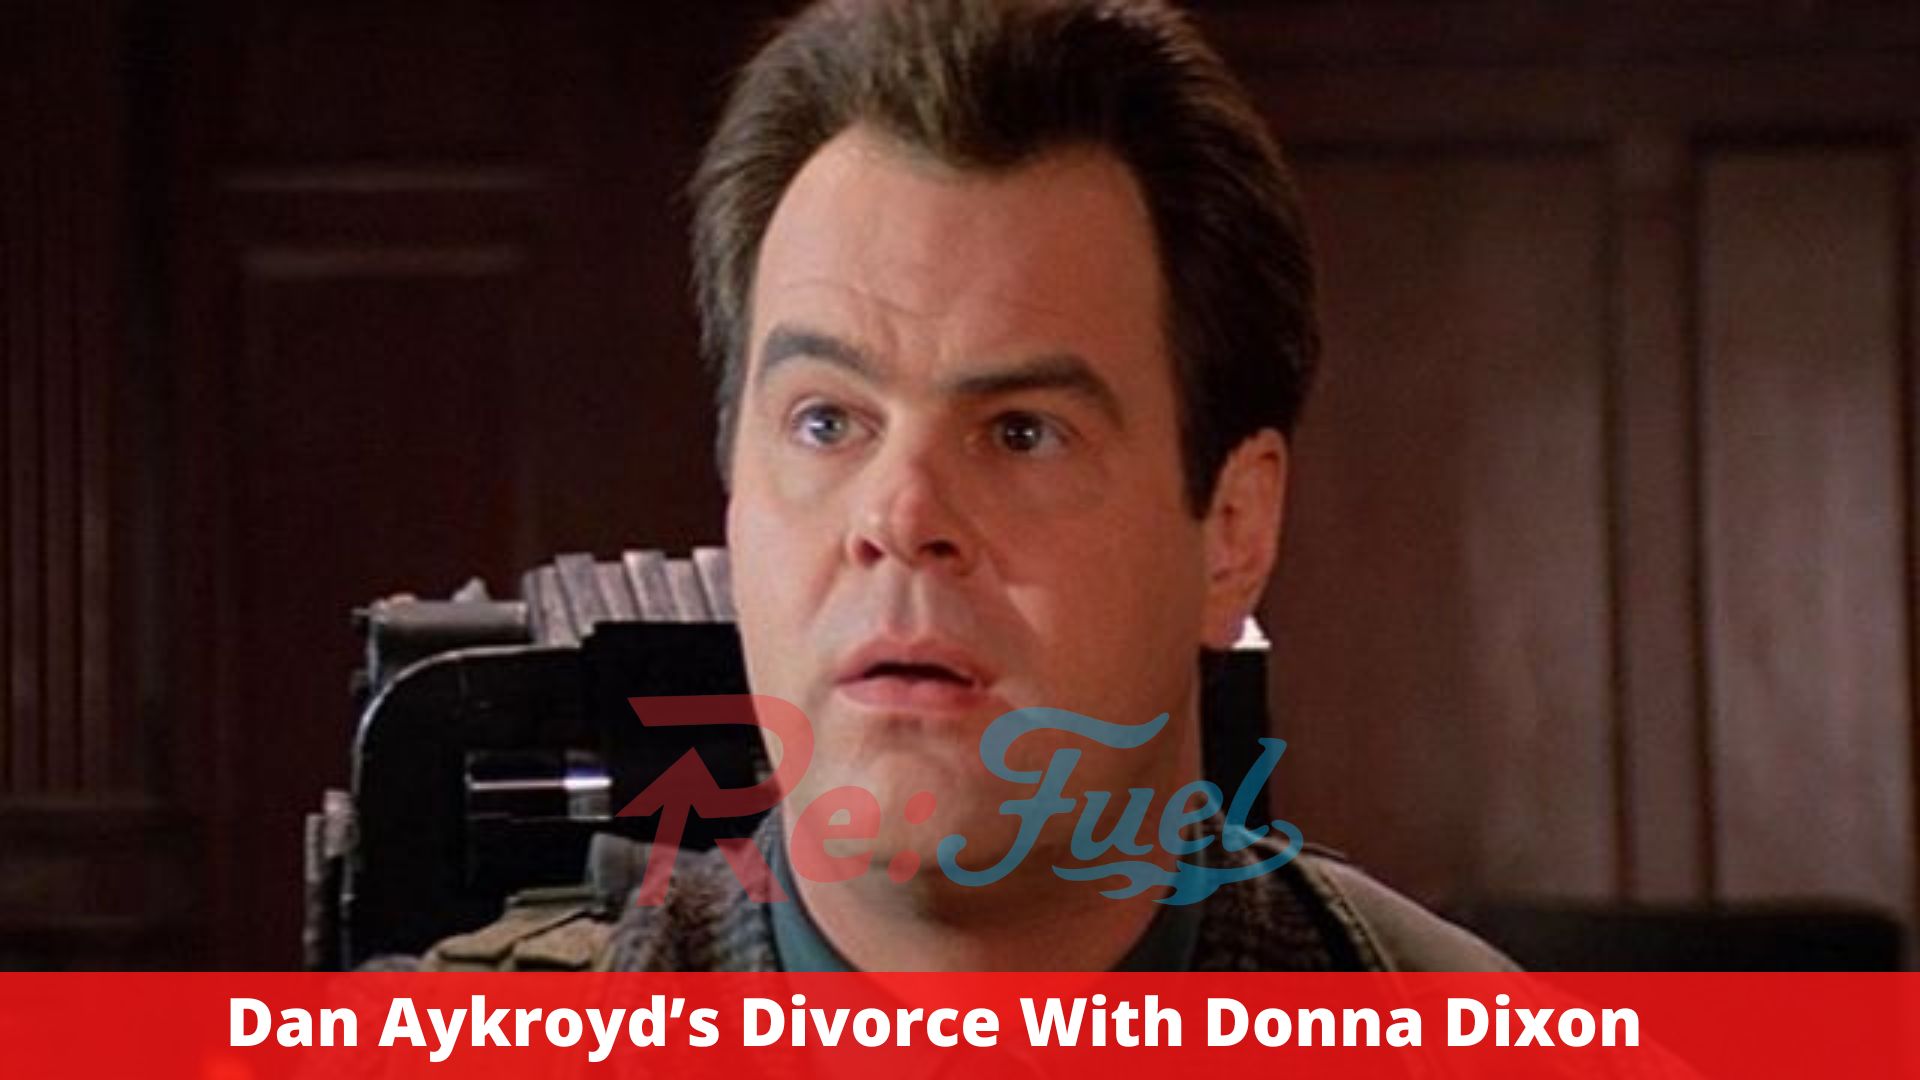 Dan Aykroyd’s Divorce With Donna Dixon